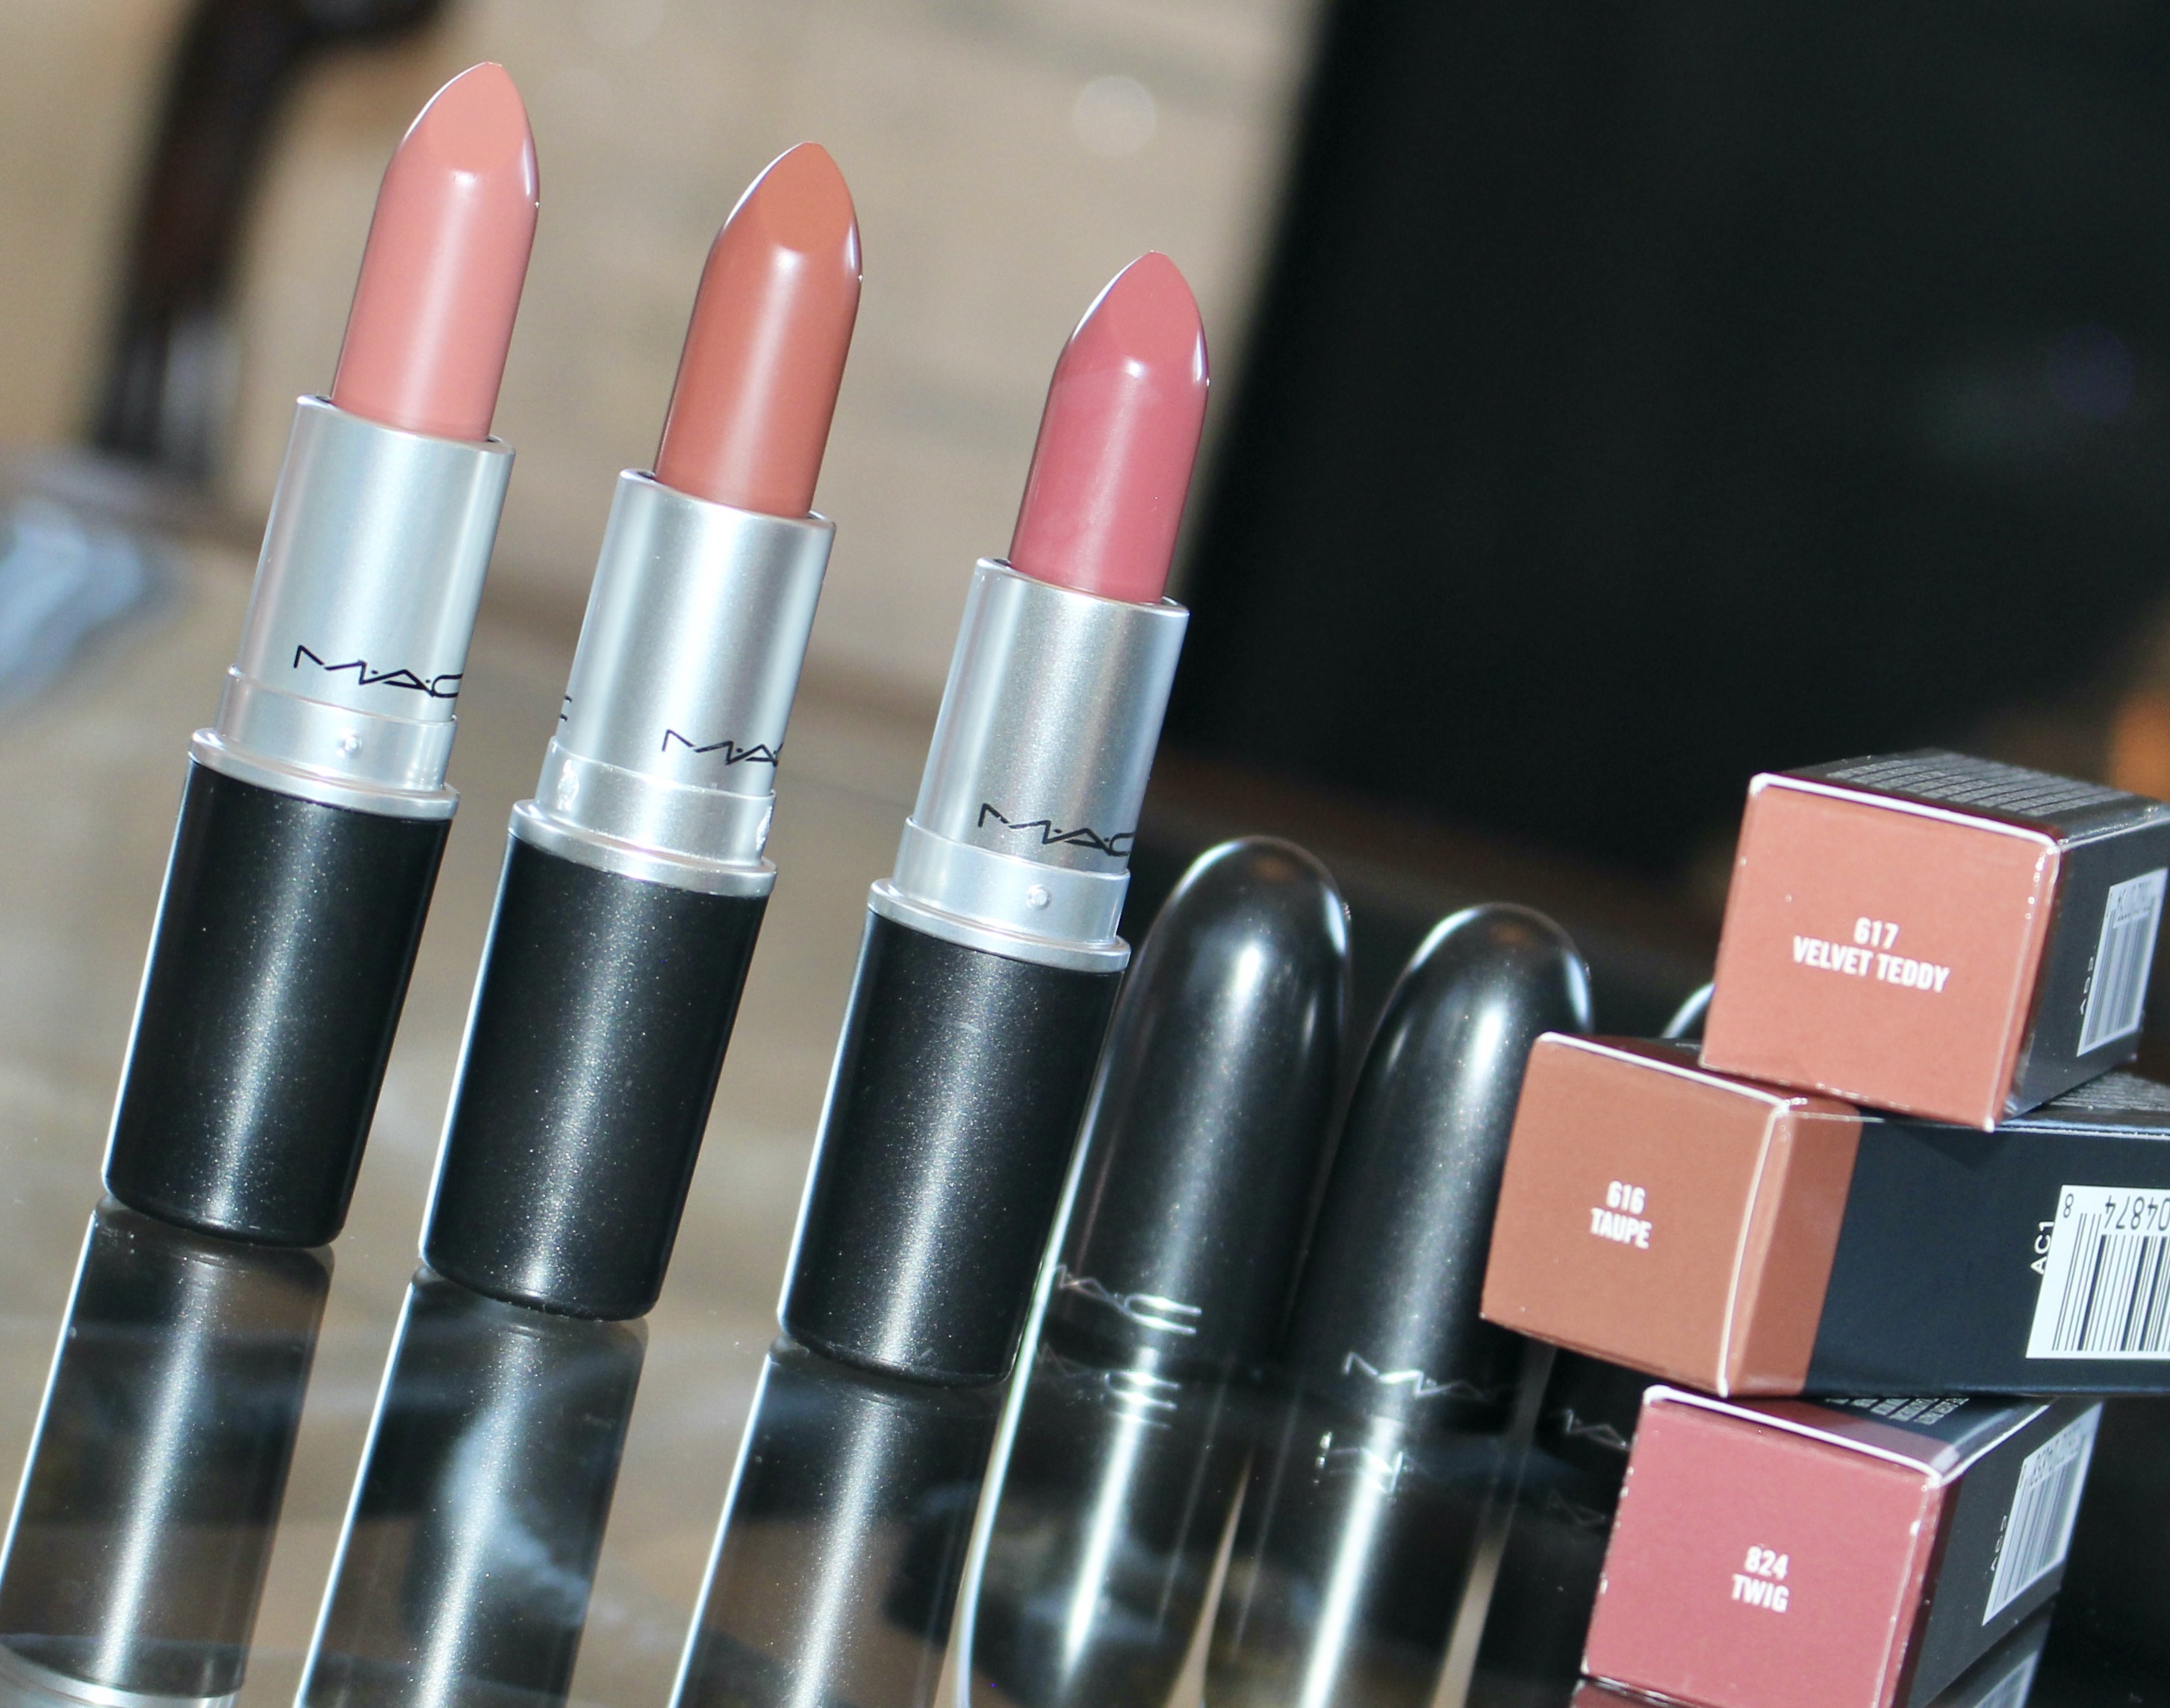 Swatching Popular Pink MAC lipsticks of brown medium skin - Velvet